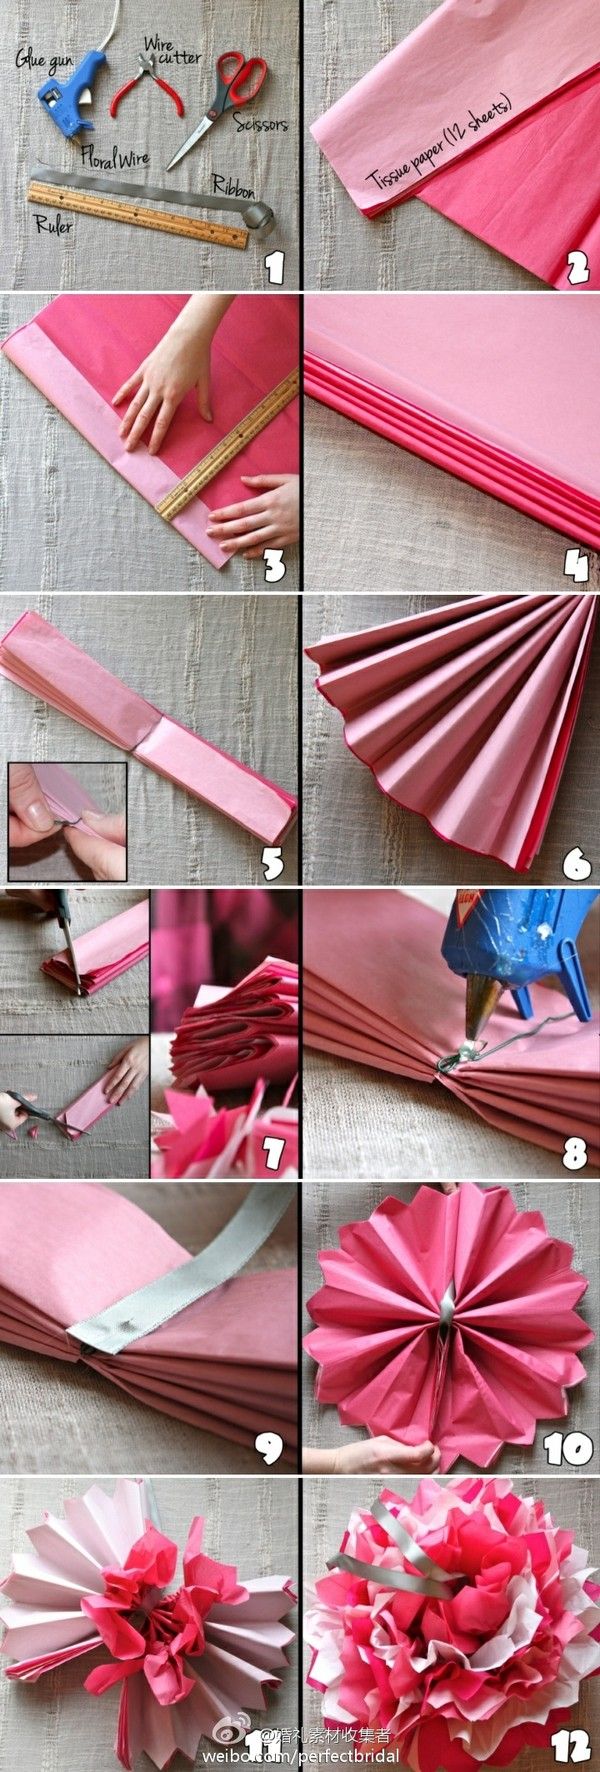 DIY Easy Tissue Paper Flower